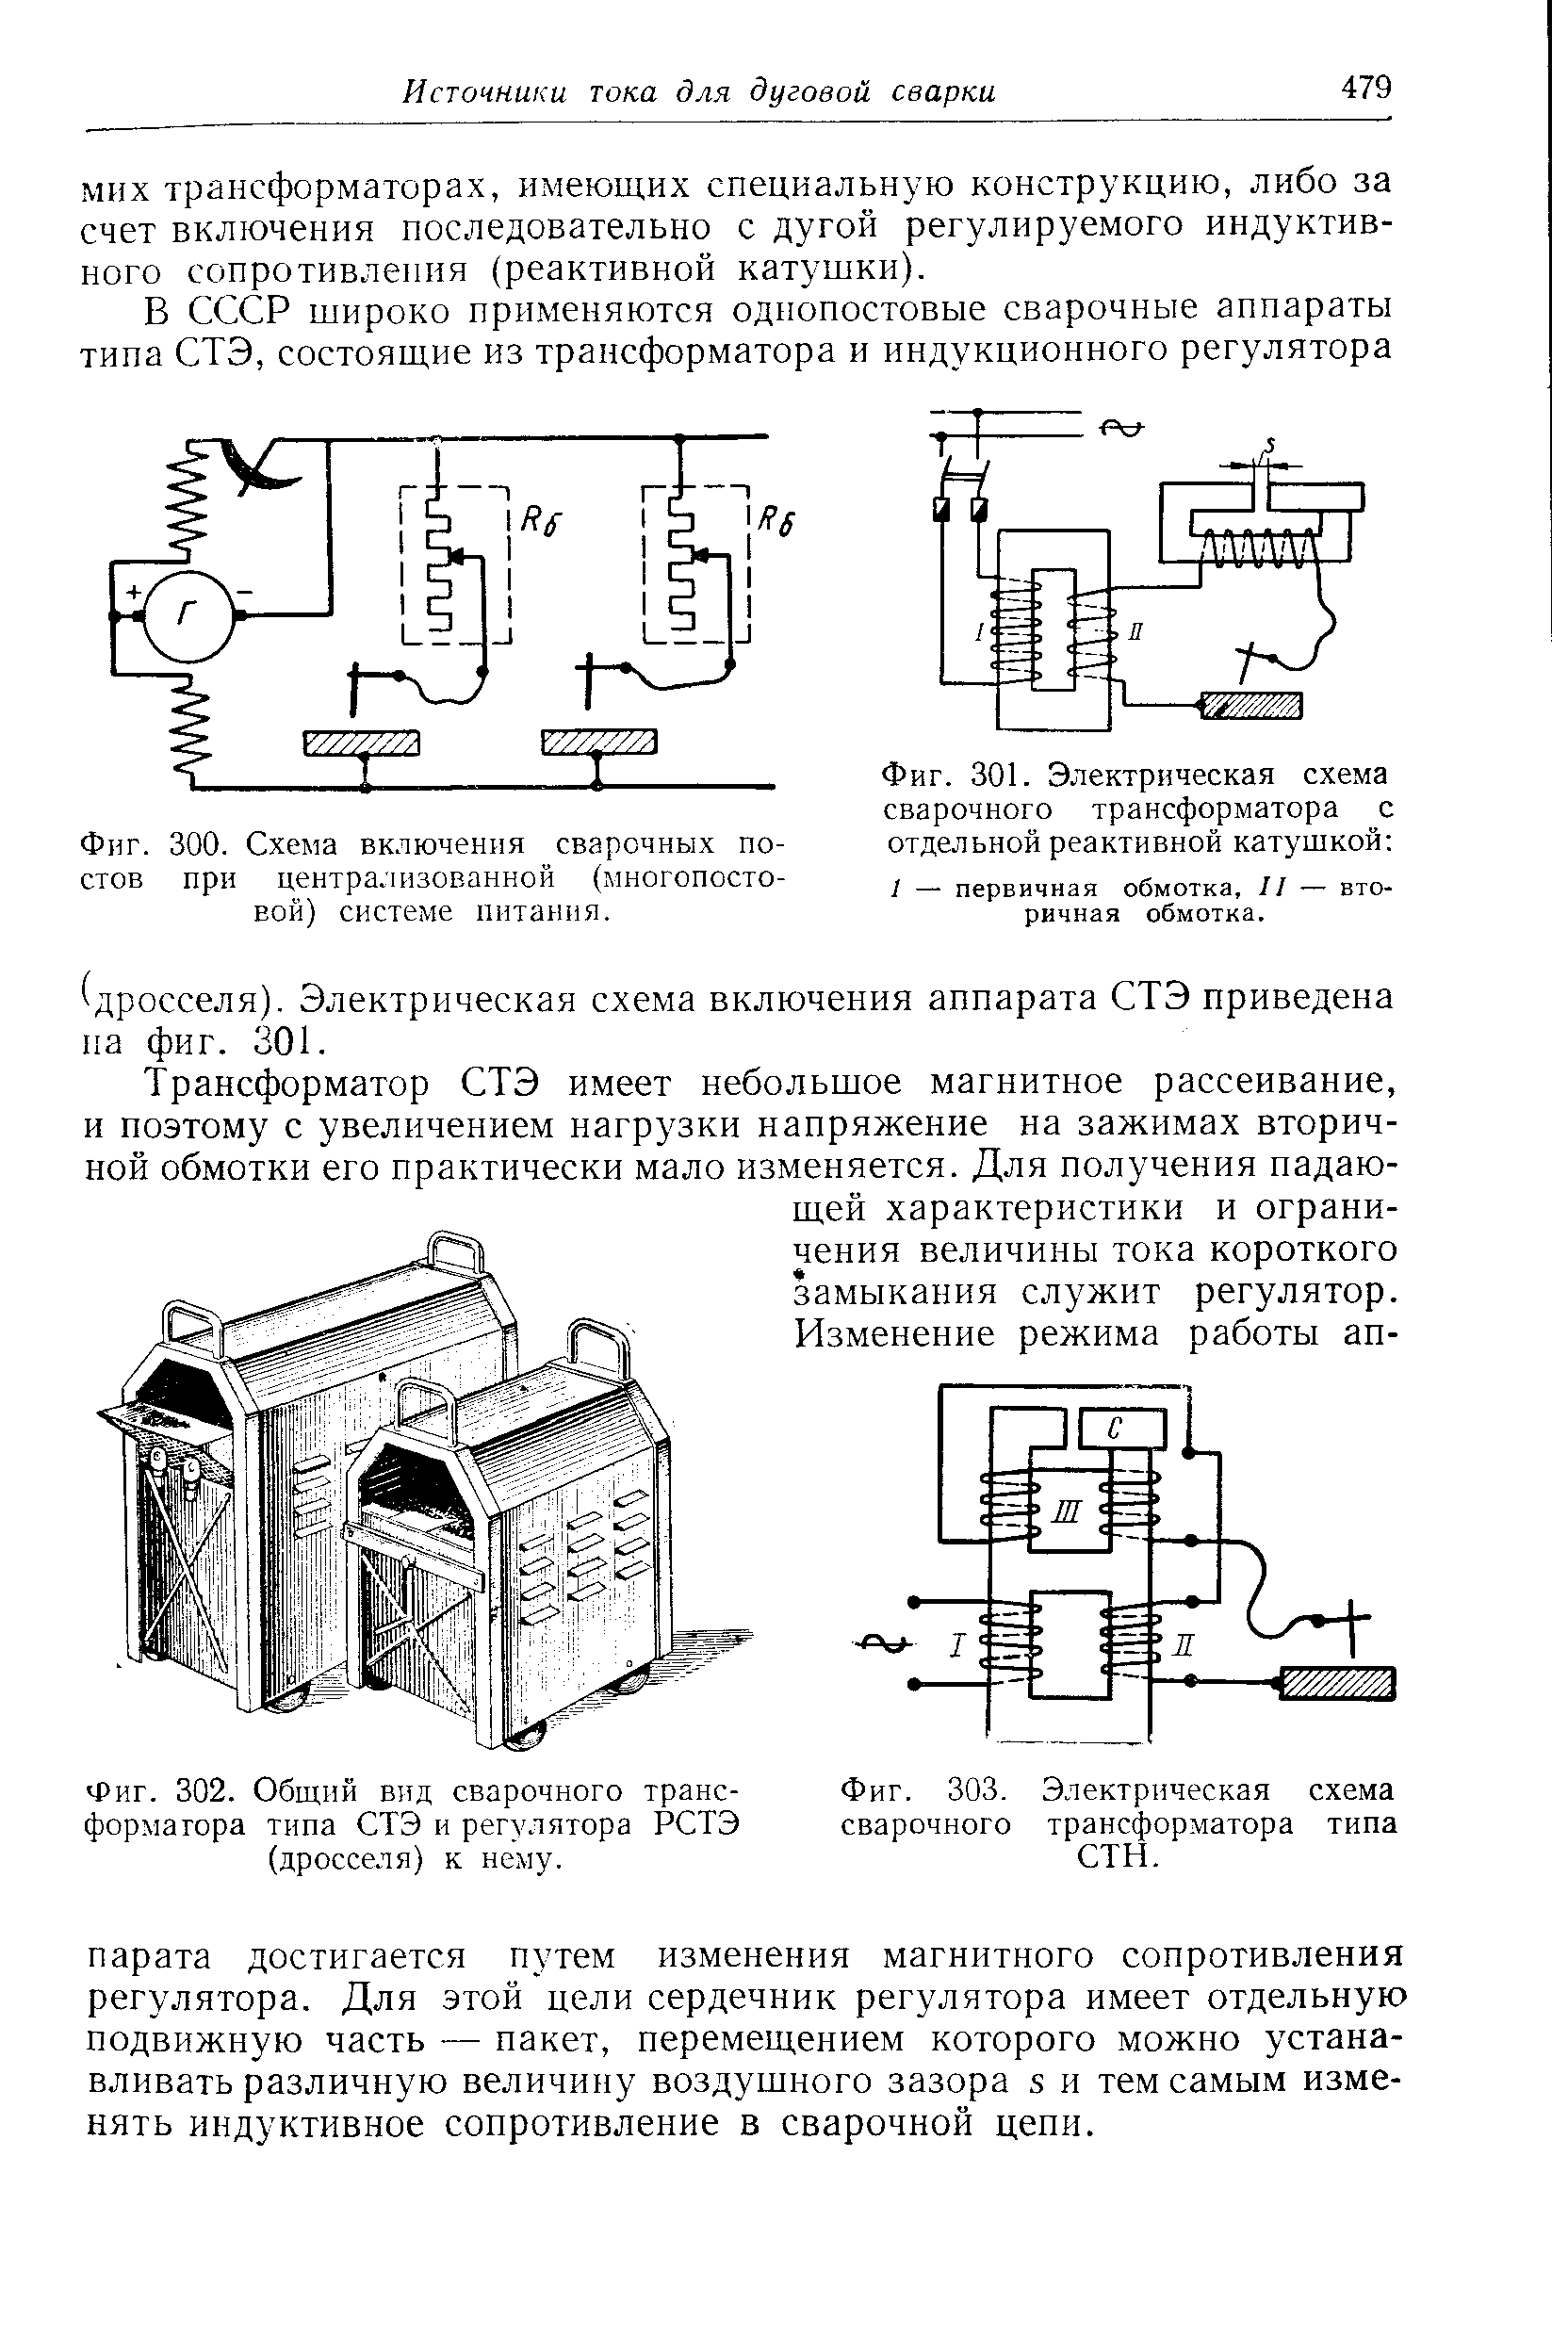 Фиг. 303. Электрическая схема сварочного трансформатора типа СТН.
